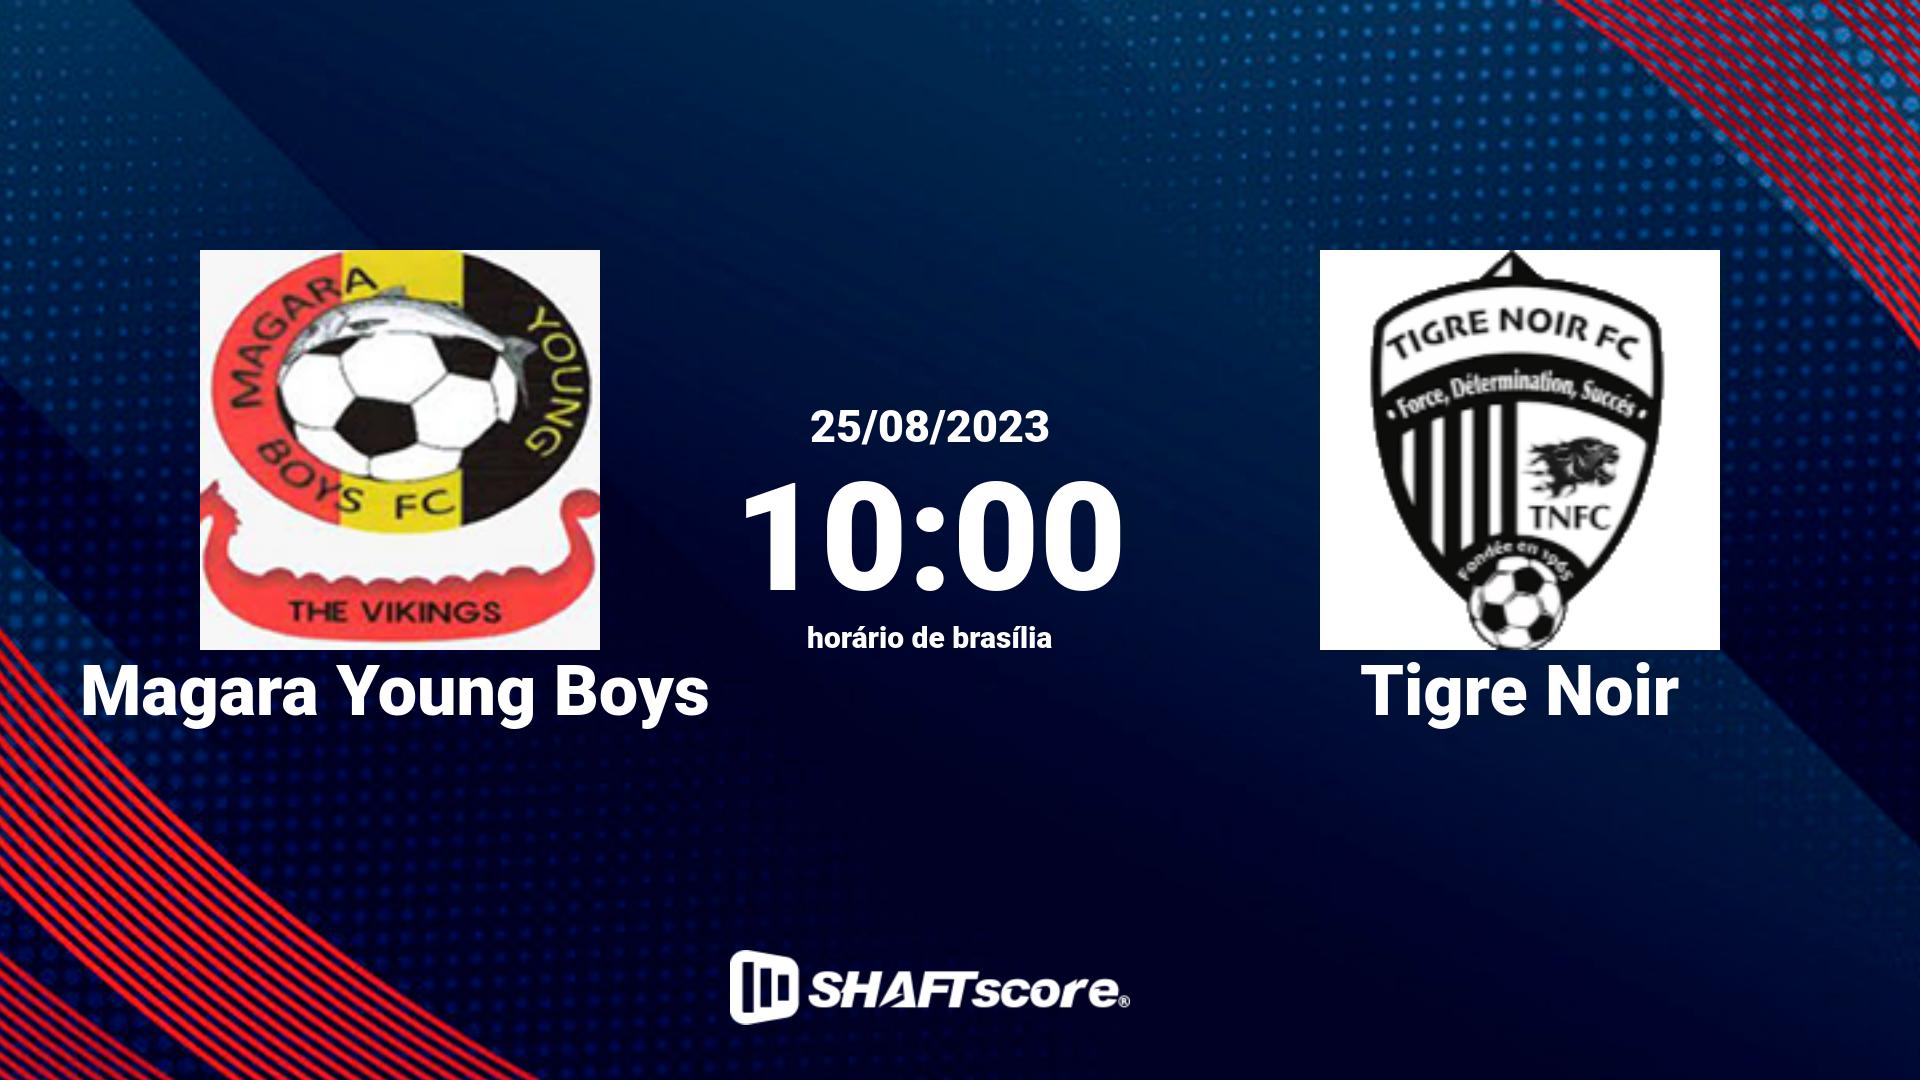 Estatísticas do jogo Magara Young Boys vs Tigre Noir 25.08 10:00